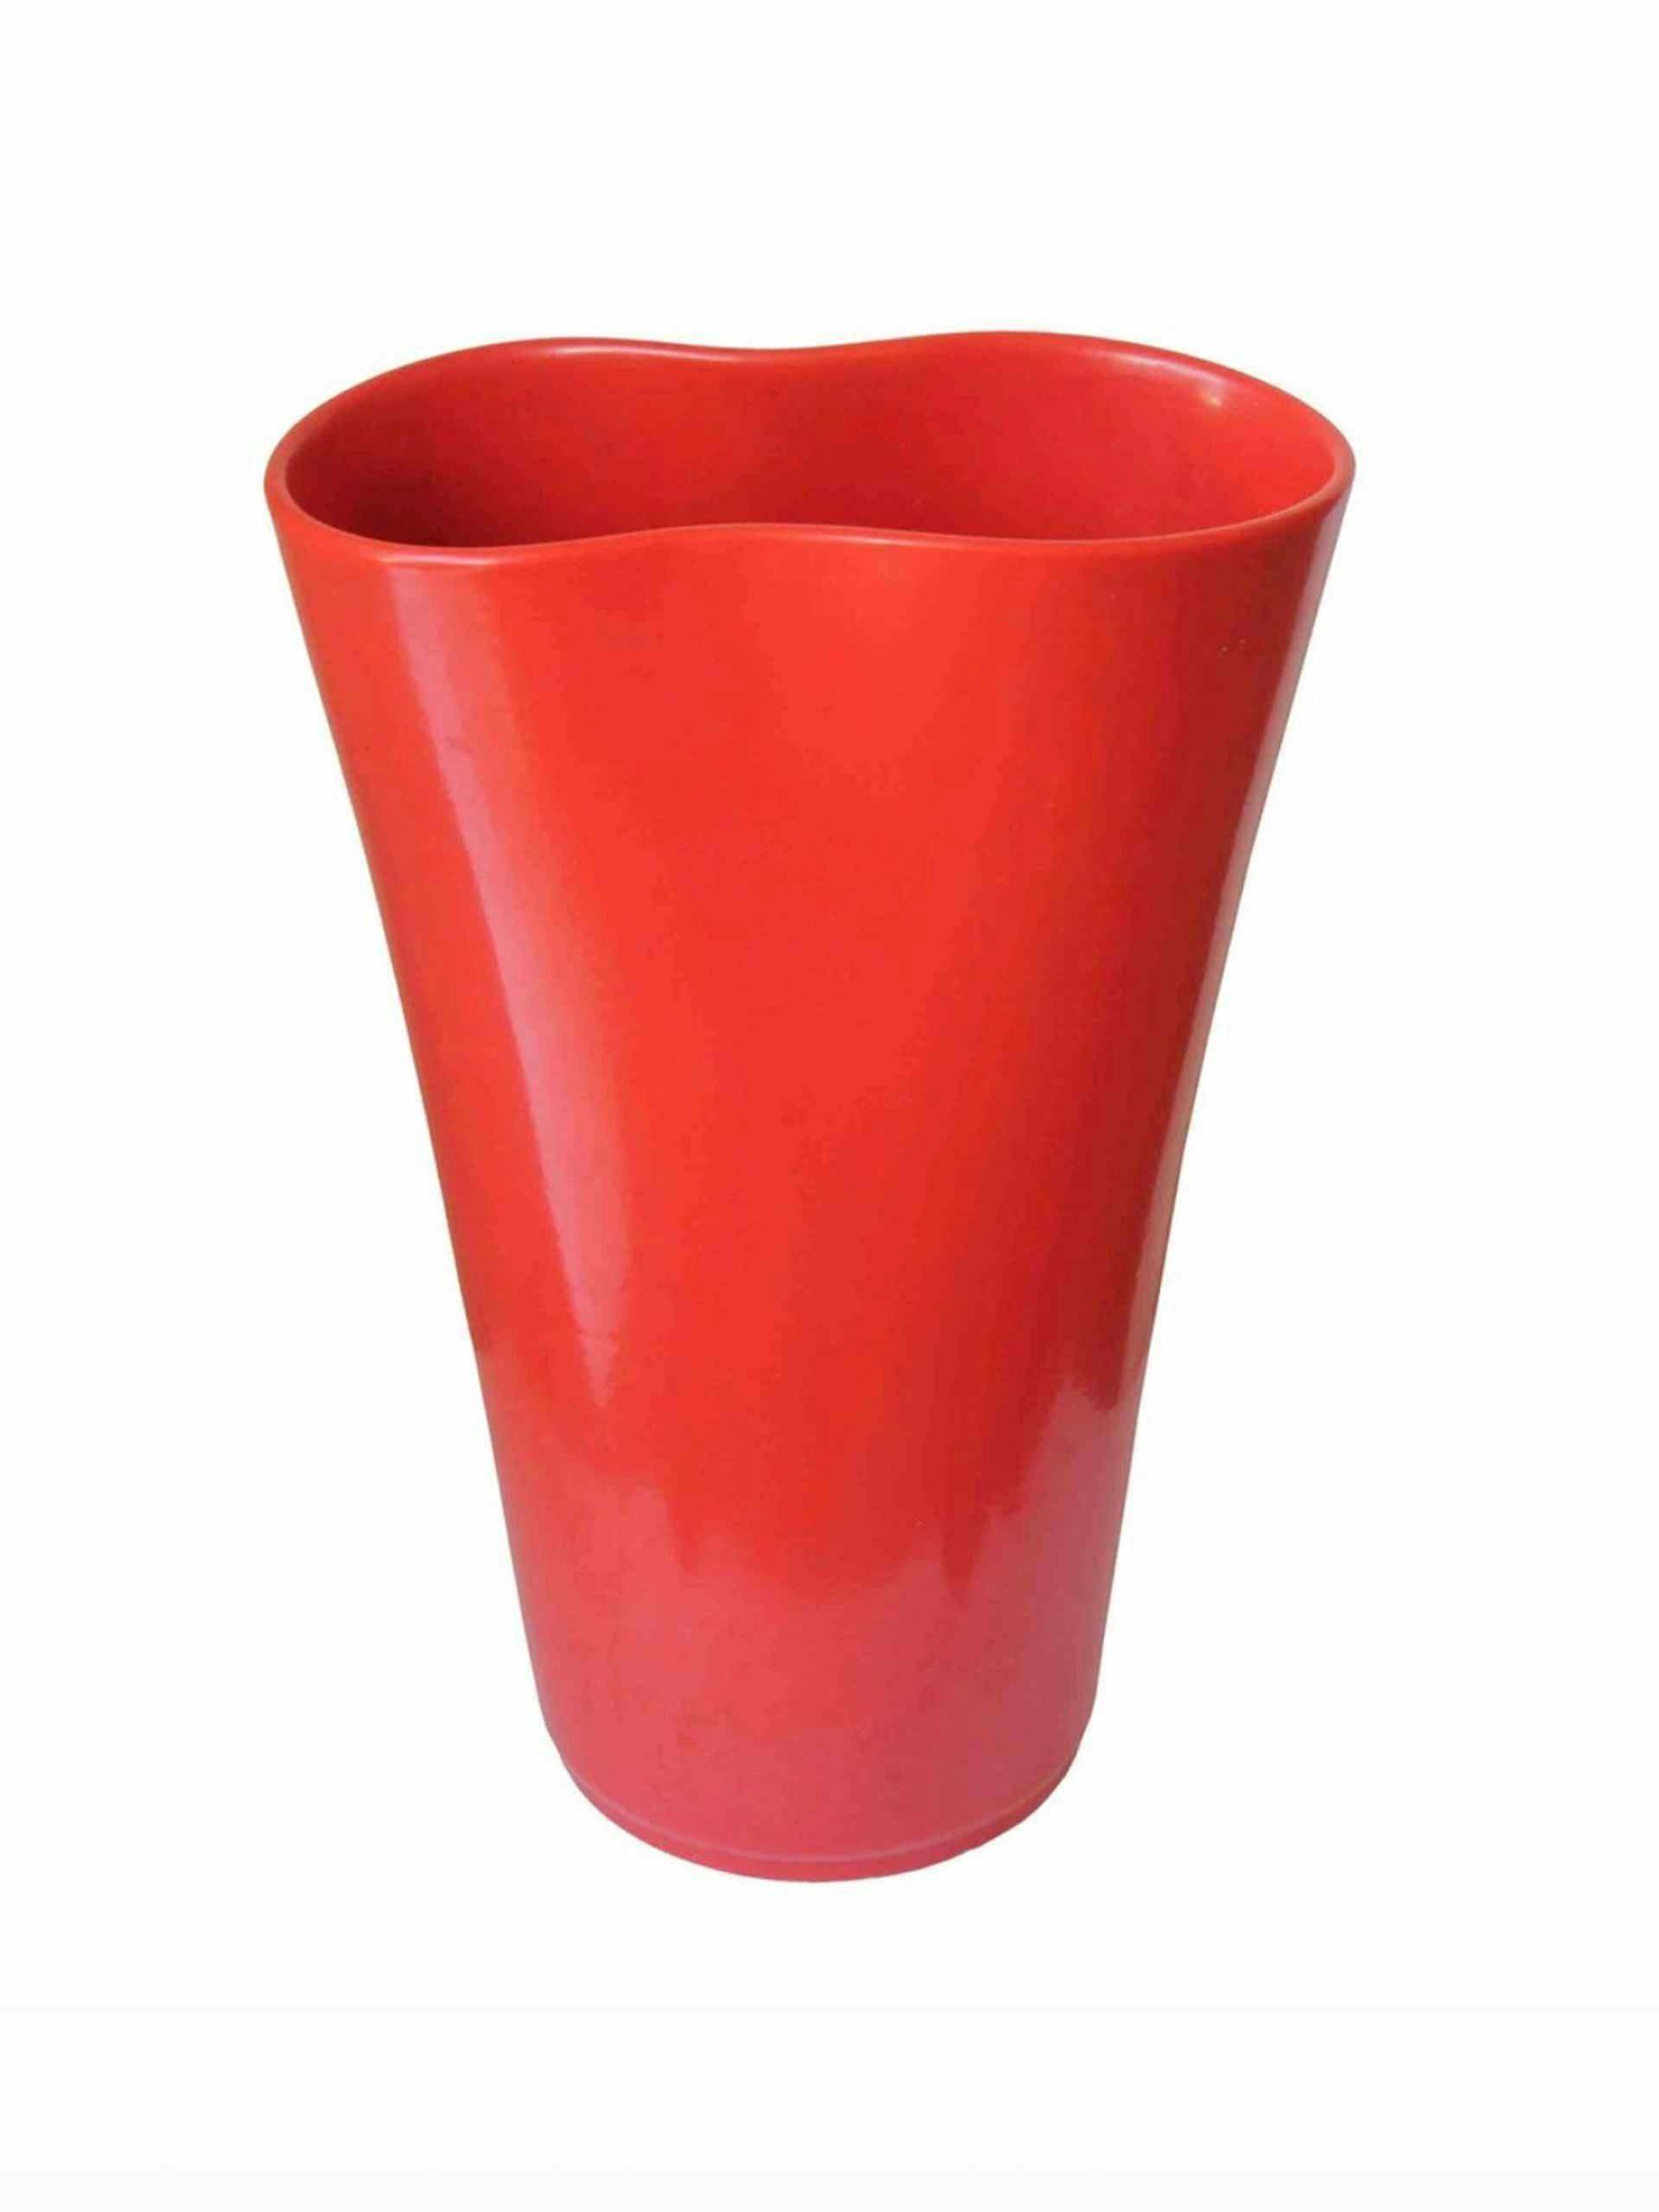 Red lacquered ceramic 1950s vase